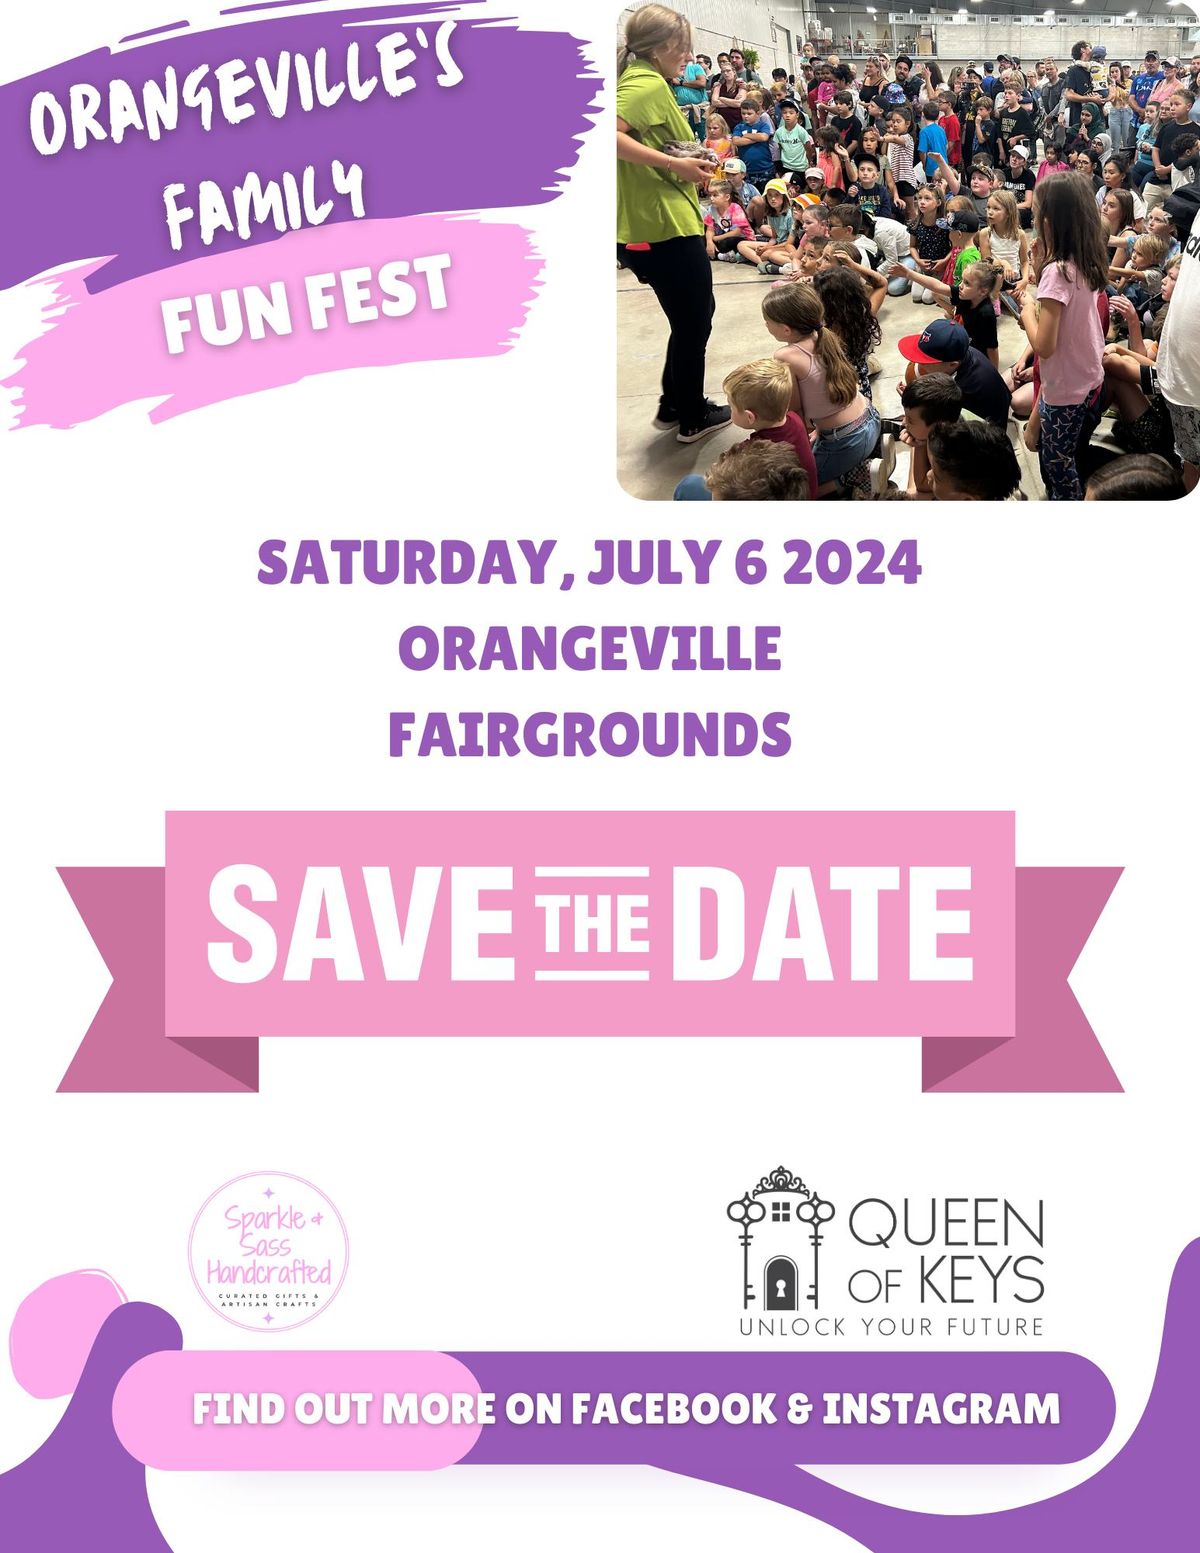 Orangeville's Family Fun Fest 2024 